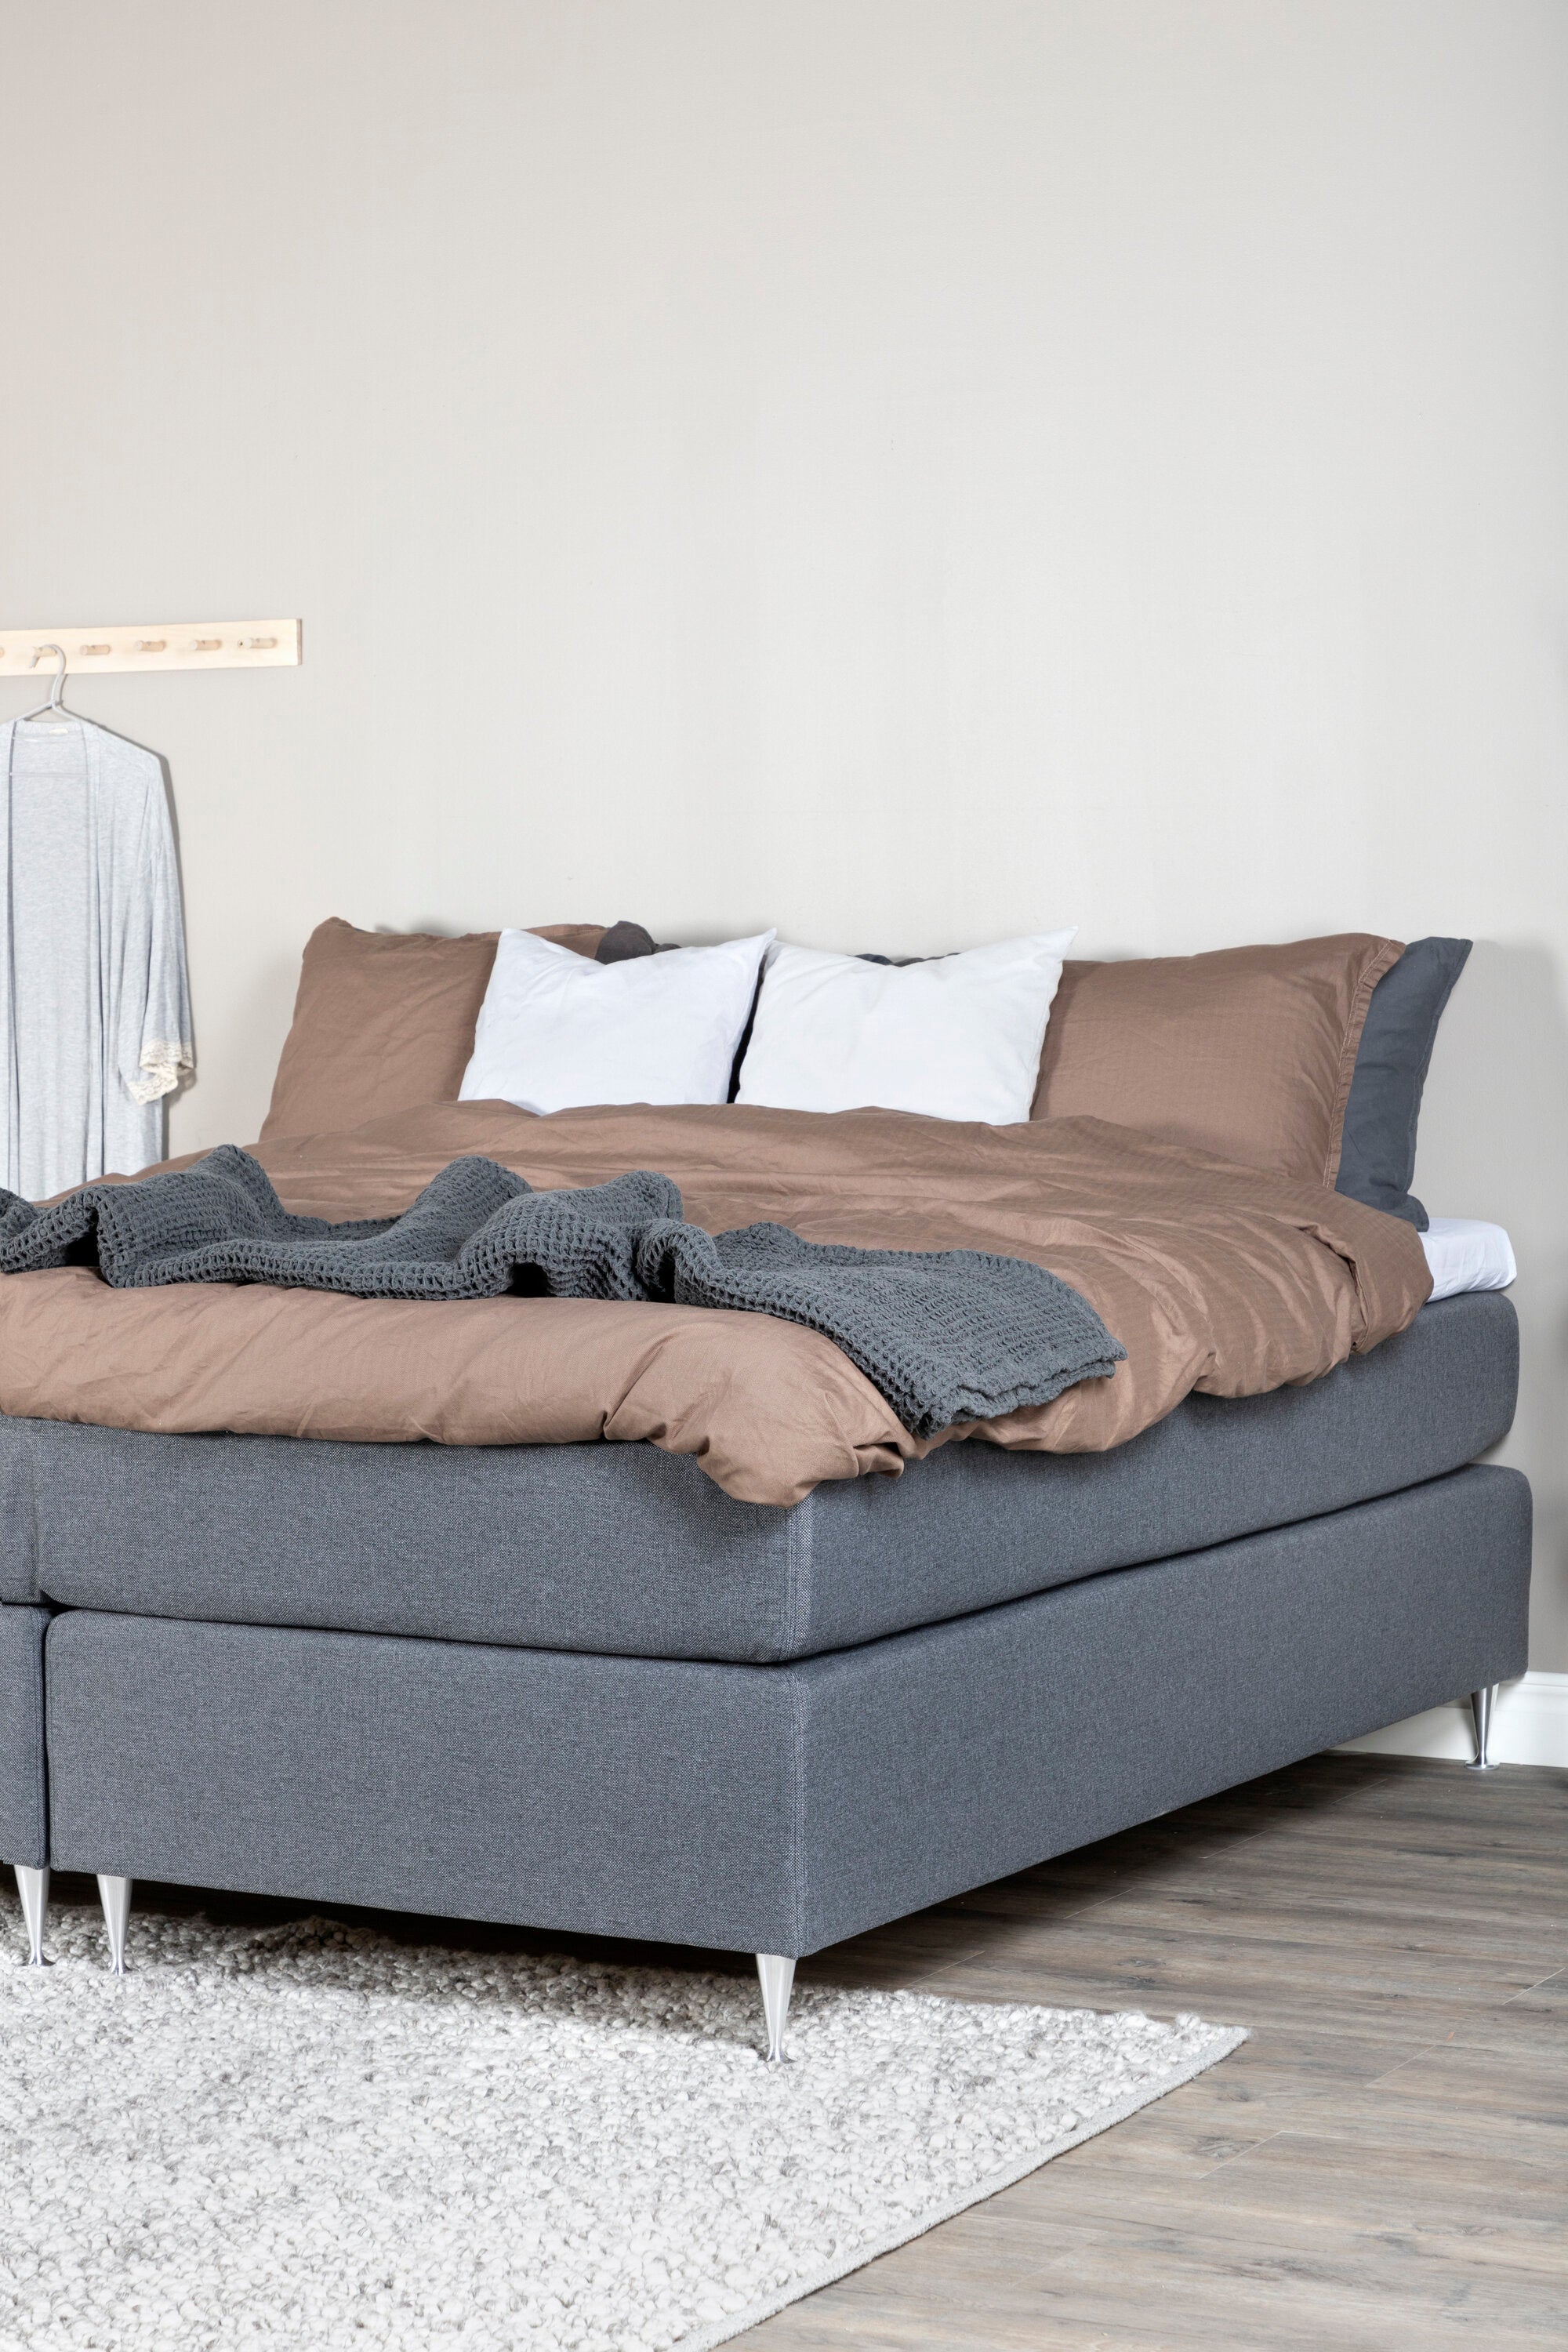 Älvdalen Bett in Dunkelgrau präsentiert im Onlineshop von KAQTU Design AG. Bett ist von Venture Home